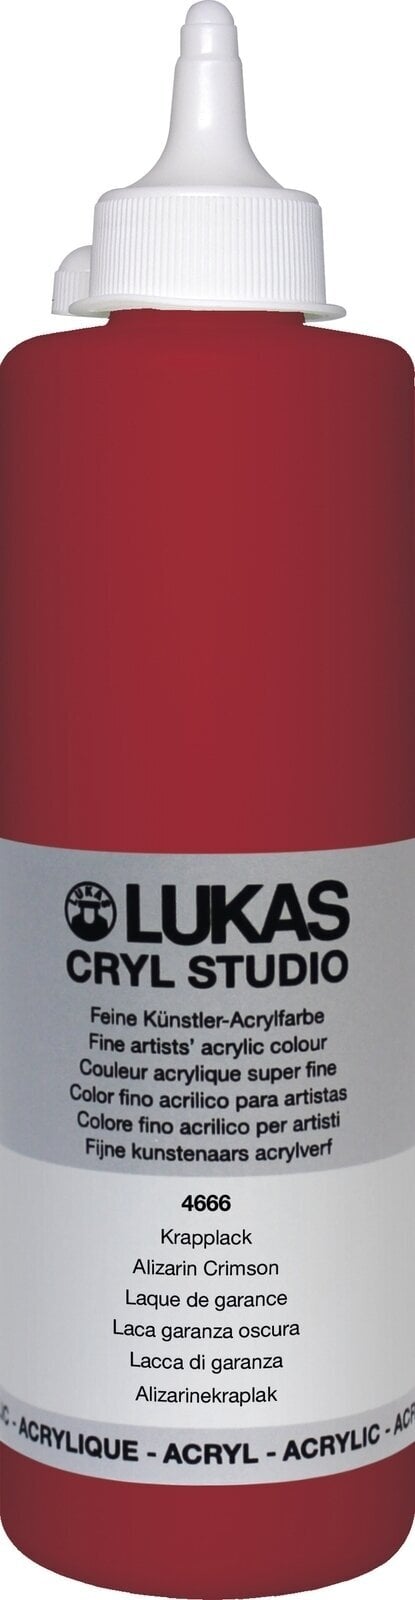 Akrylová barva Lukas Cryl Studio Akrylová barva 500 ml Alizarin Crimson